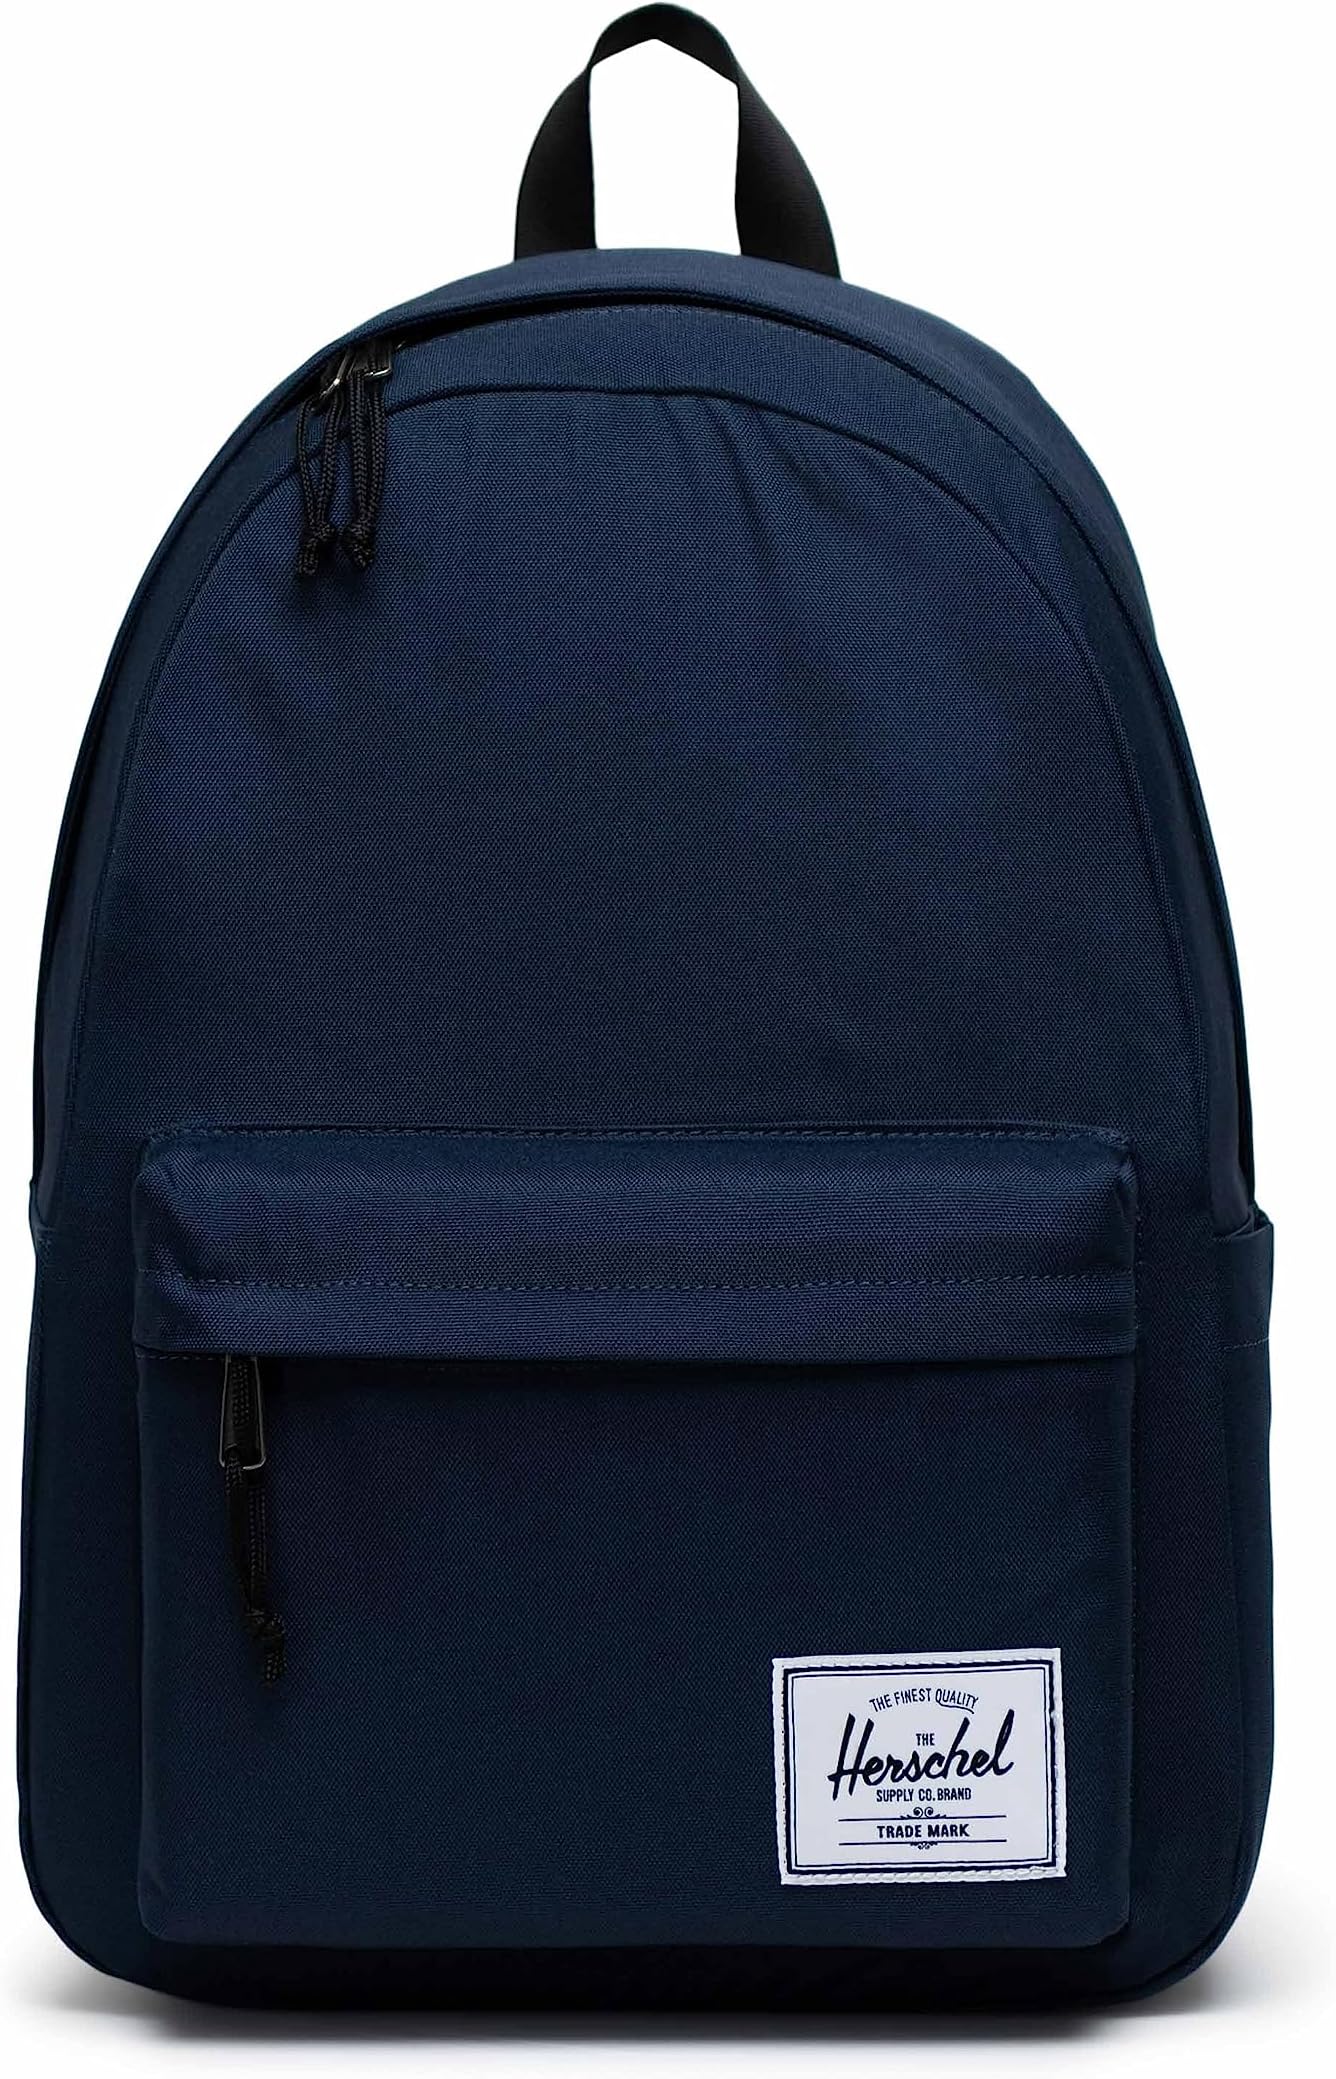 Рюкзак Classic XL Backpack Herschel Supply Co., темно-синий